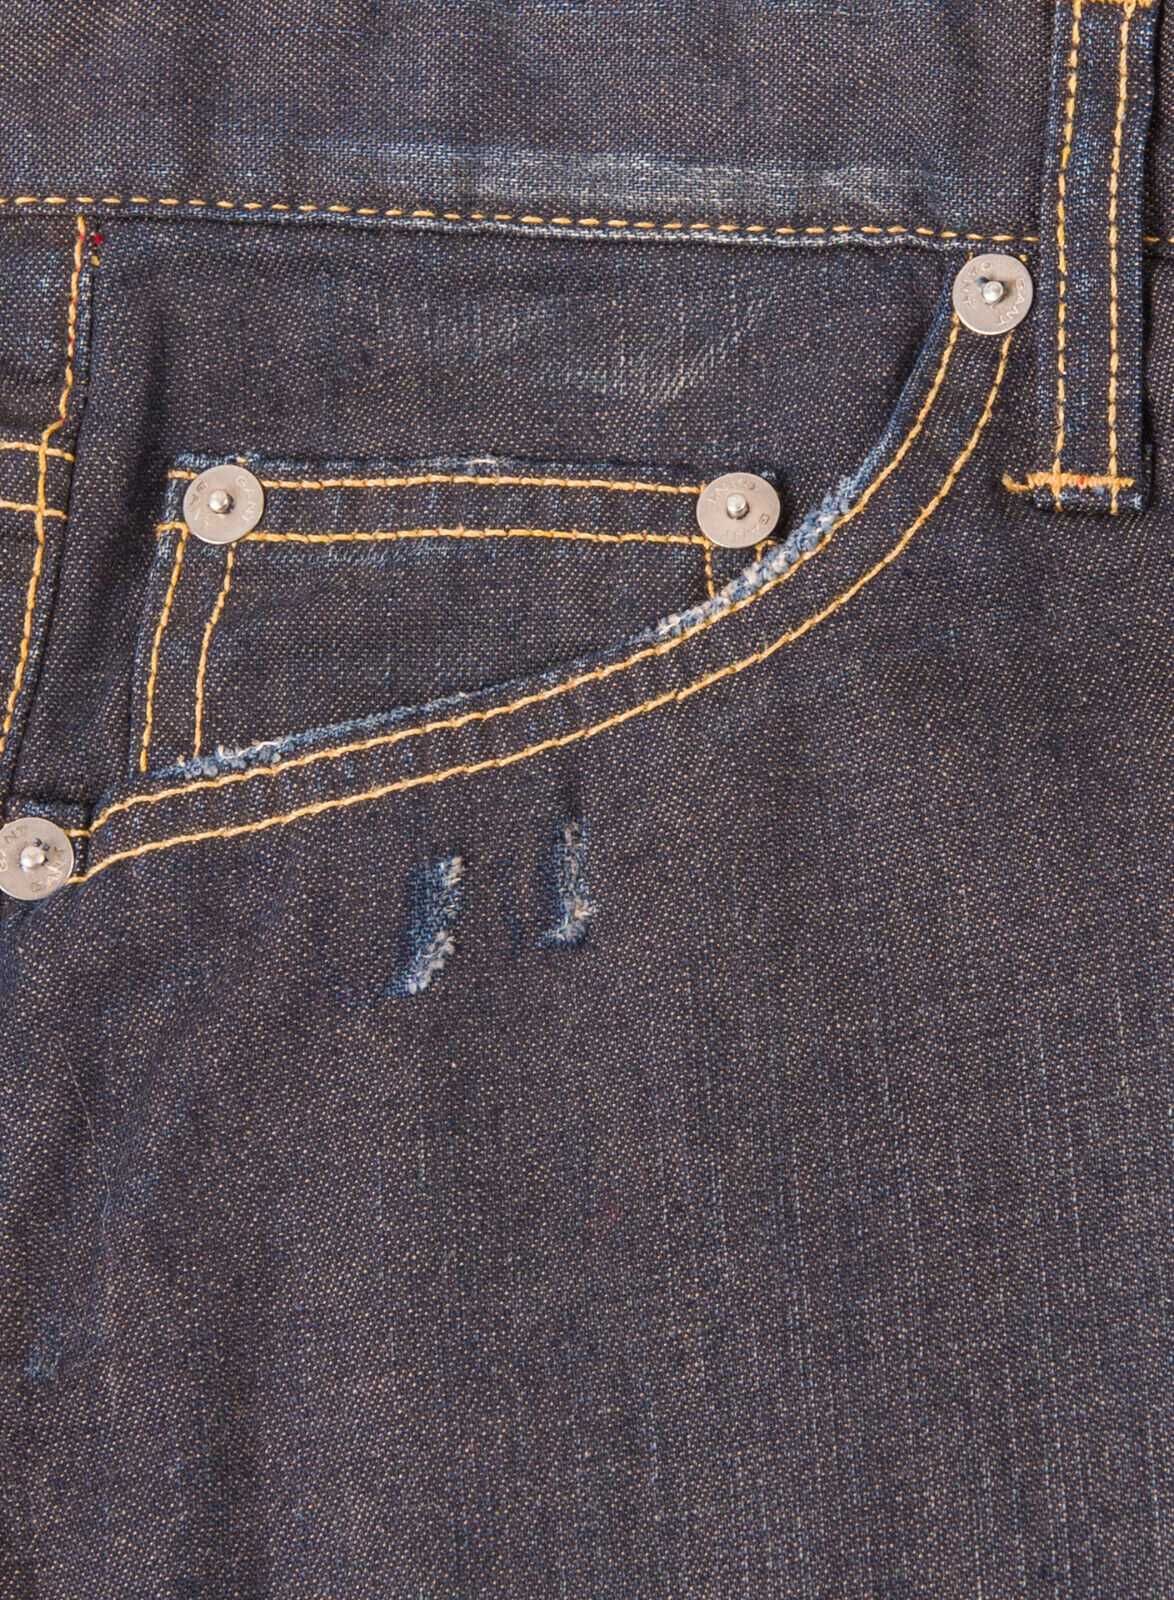 Jeans novas GANT W32L36 - Preço Fixo